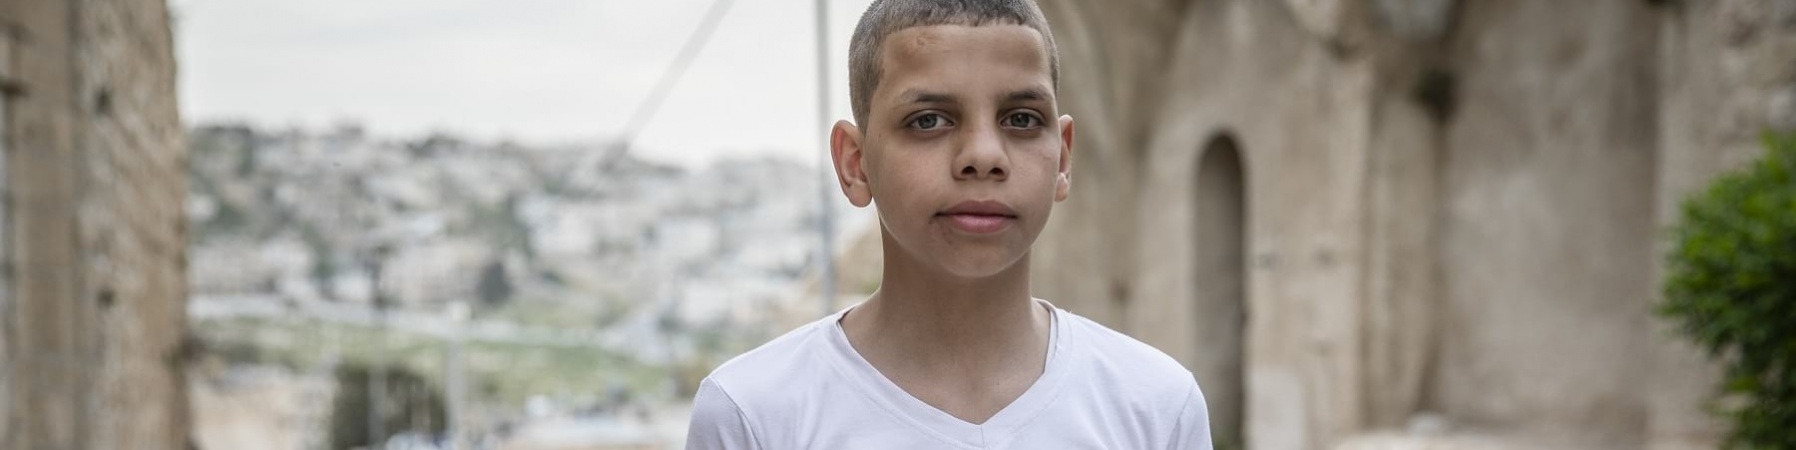 bambino dei territori palestinesi occupati ripreso a mezzo busto con maglietta bianca e sfondo paesaggio sfocato